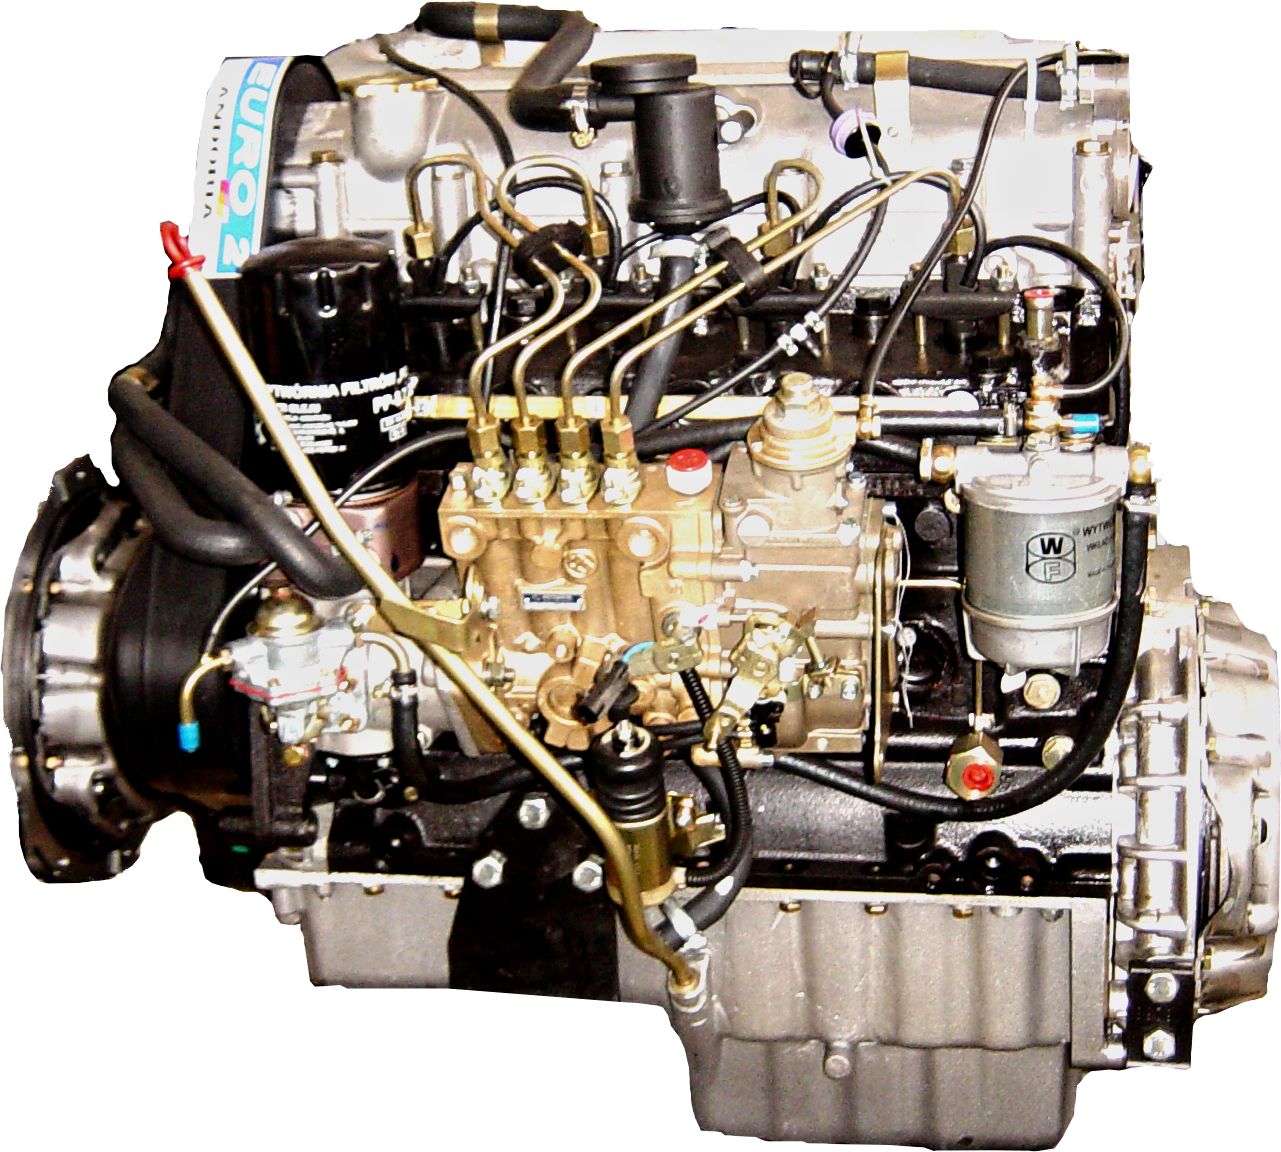 Andorias S301D-motor - alt hvad du behøver at vide om den